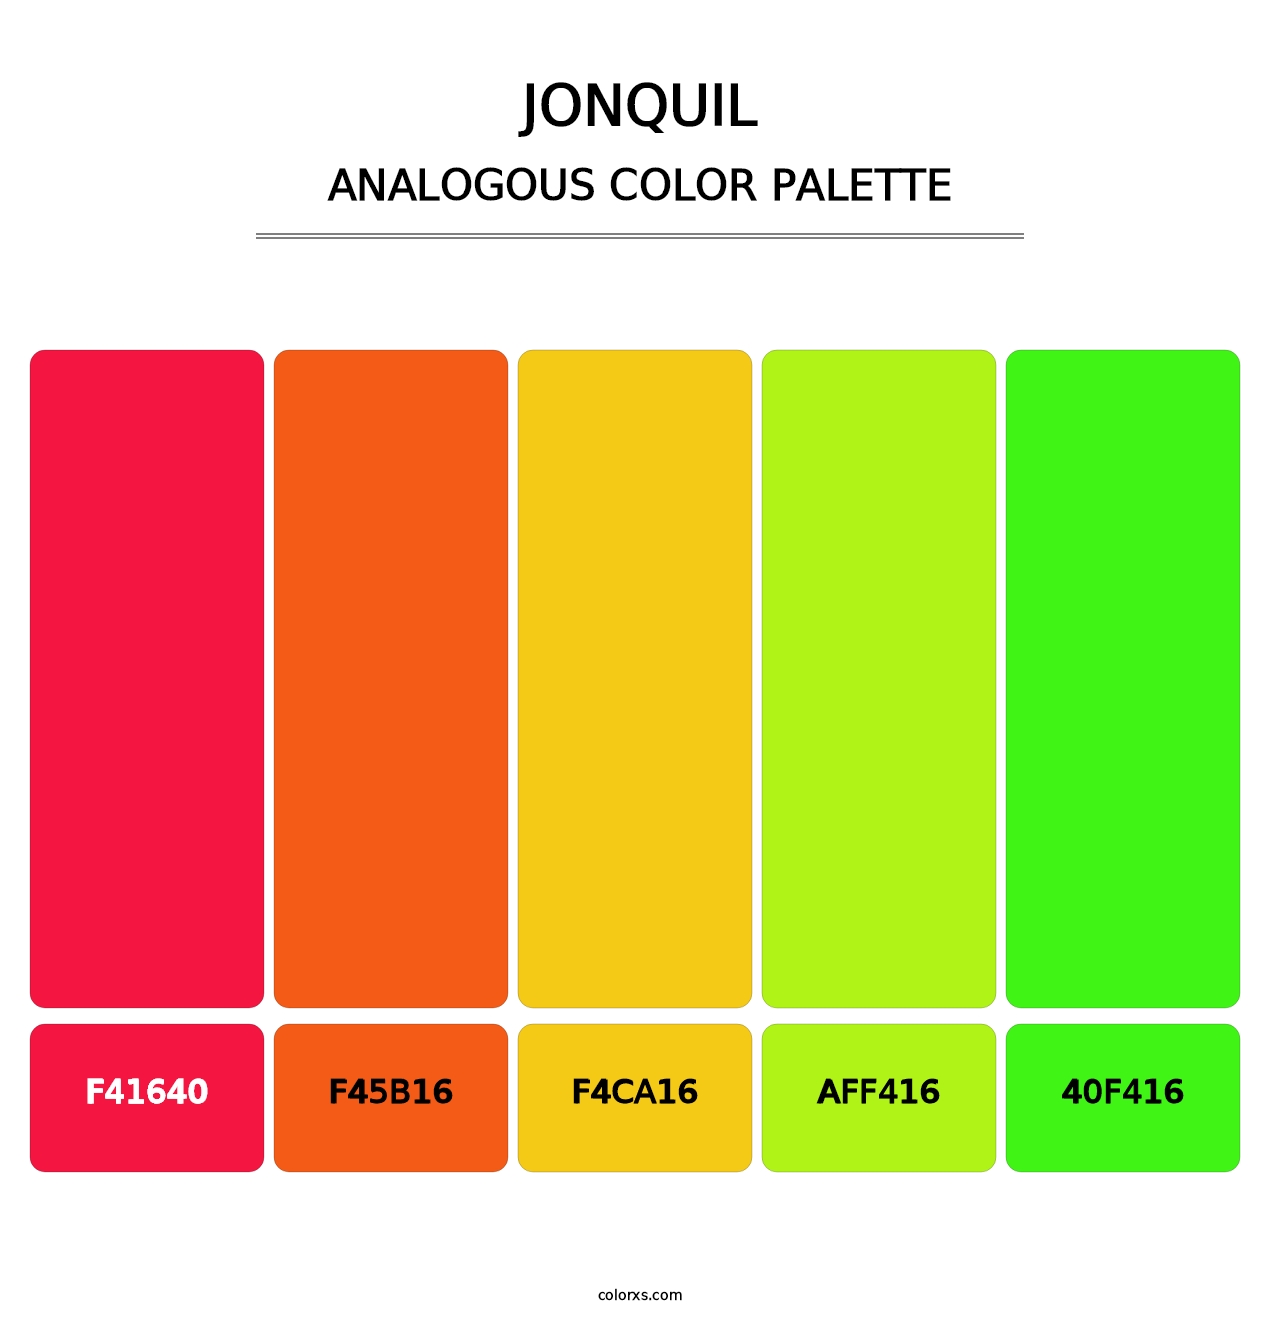 Jonquil - Analogous Color Palette